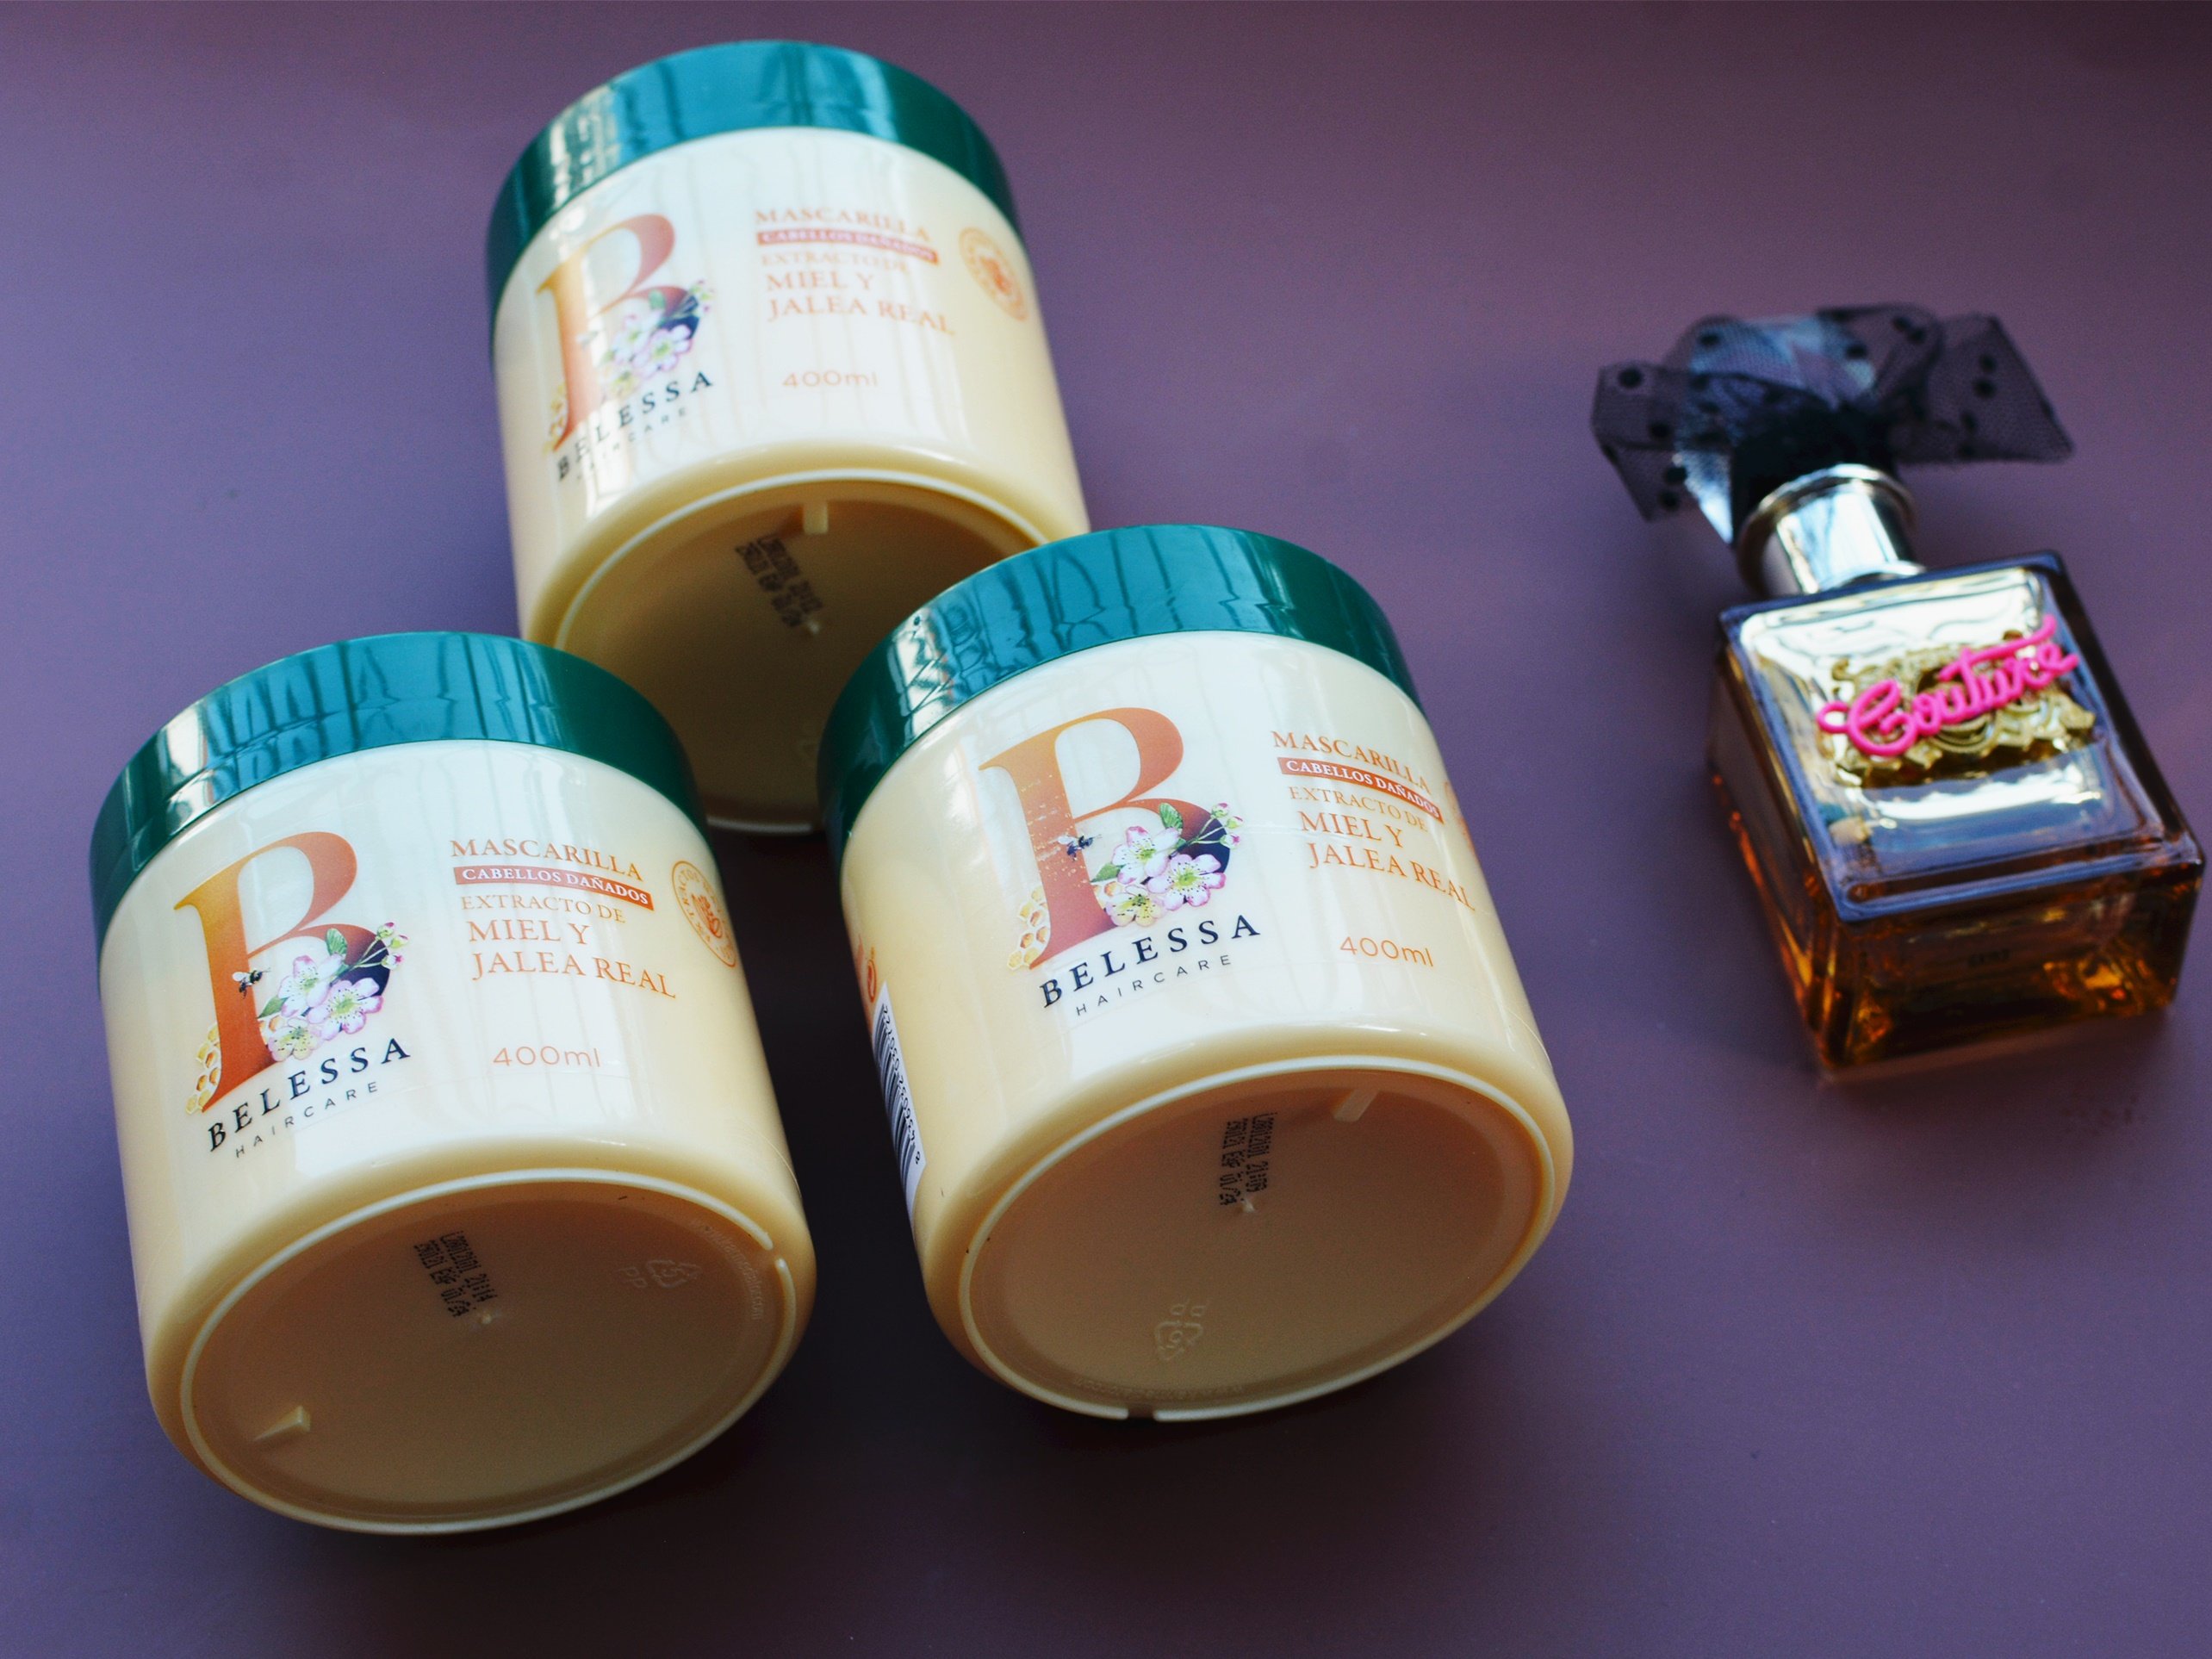 Dầu ủ phục hồi tóc Honey & Royal Jelly,hiệu Belessa, dung tích 400ml